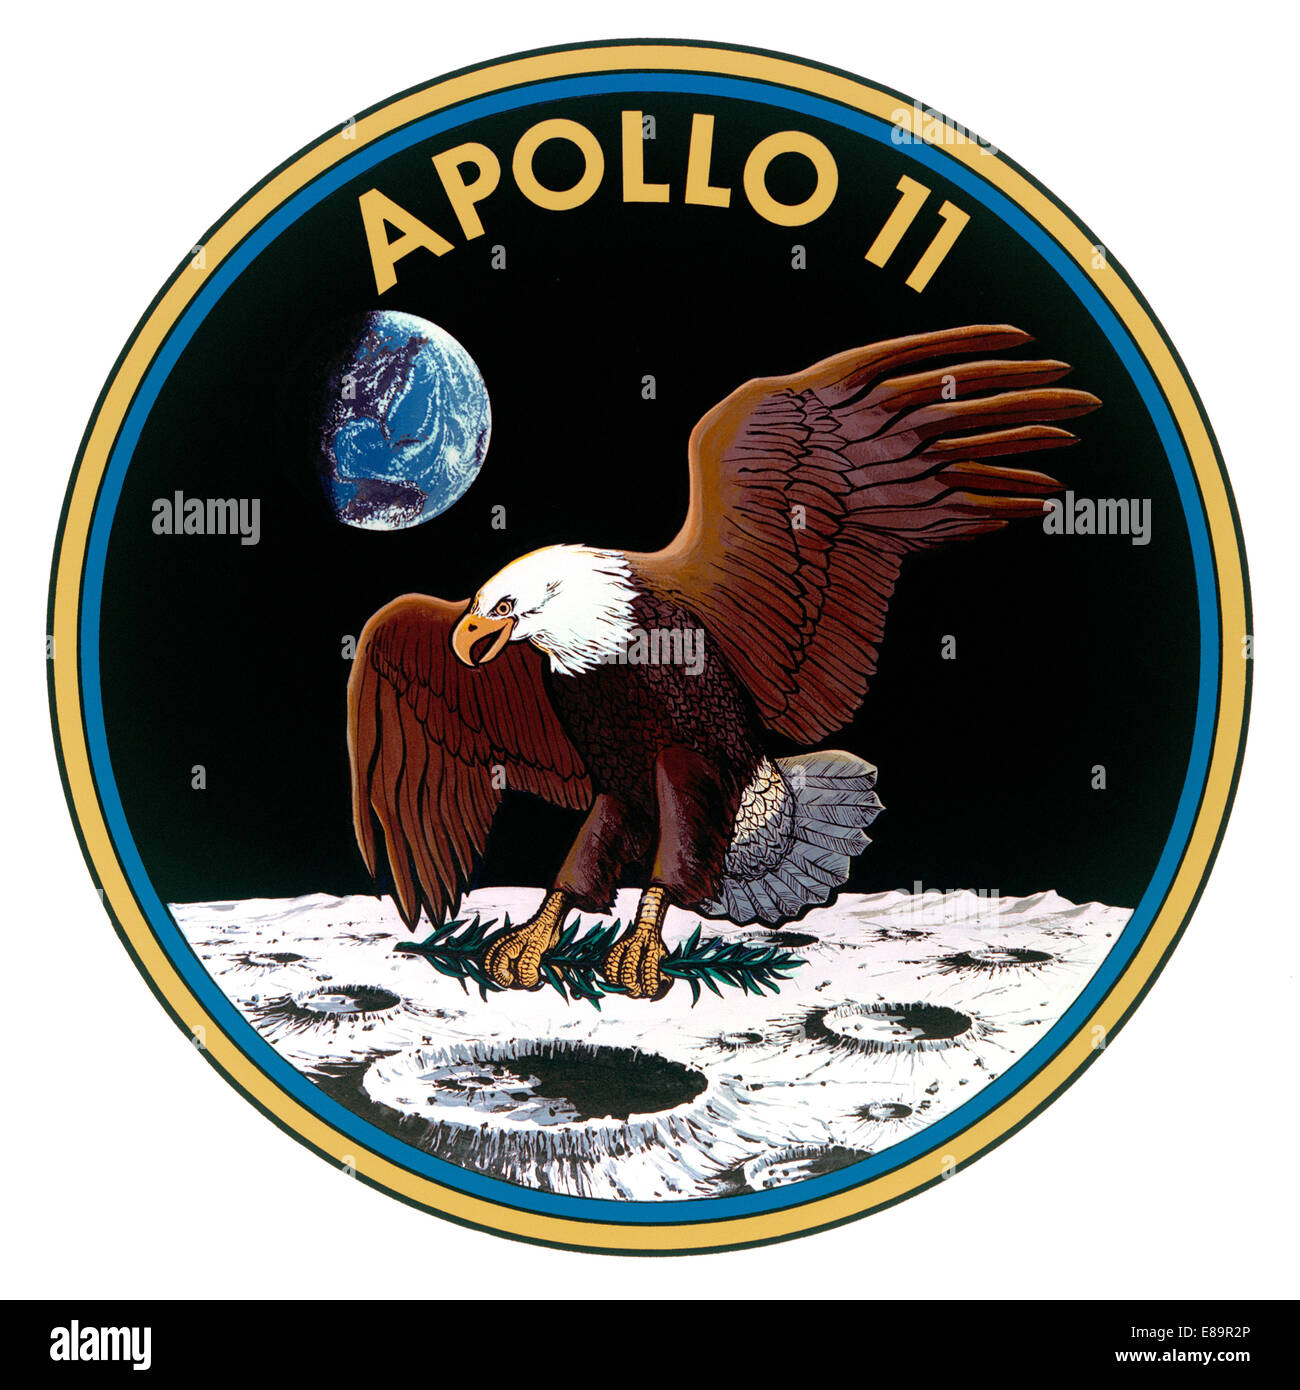 Avvio- Luglio 16, 1969 sbarco- Luglio 24, 1969 astronauti- Neil Armstrong, Edwin "Buzz" E. Aldrin Jr e Michael Collins Apollo 11 portato tre astronauti sulla luna con una missione di sbarco sulla luna. Questa missione è stata effettuata il 20 luglio 1969 quando Neil Armstrong e Buzz Aldrin sbarcati sulla luna. Essi hanno lasciato medaglie commemorative recanti i nomi di tre Apollo 1 astronauti che hanno perso la loro vita come anche i nomi di due cosmonauti che ha perso la vita in incidenti. Gli astronauti a sinistra una placca firmato dai tre astronauti nonché il presidente Nixon. I due astronauta Foto Stock